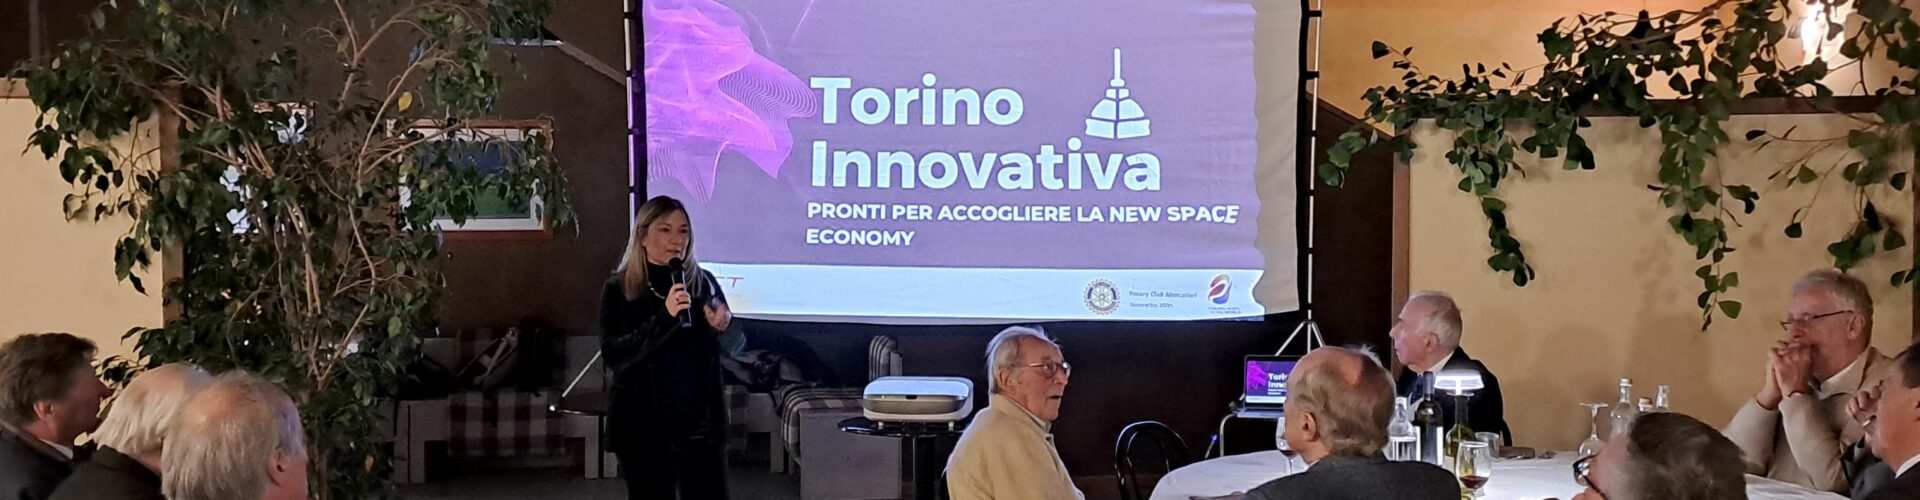 Torino Innovativa